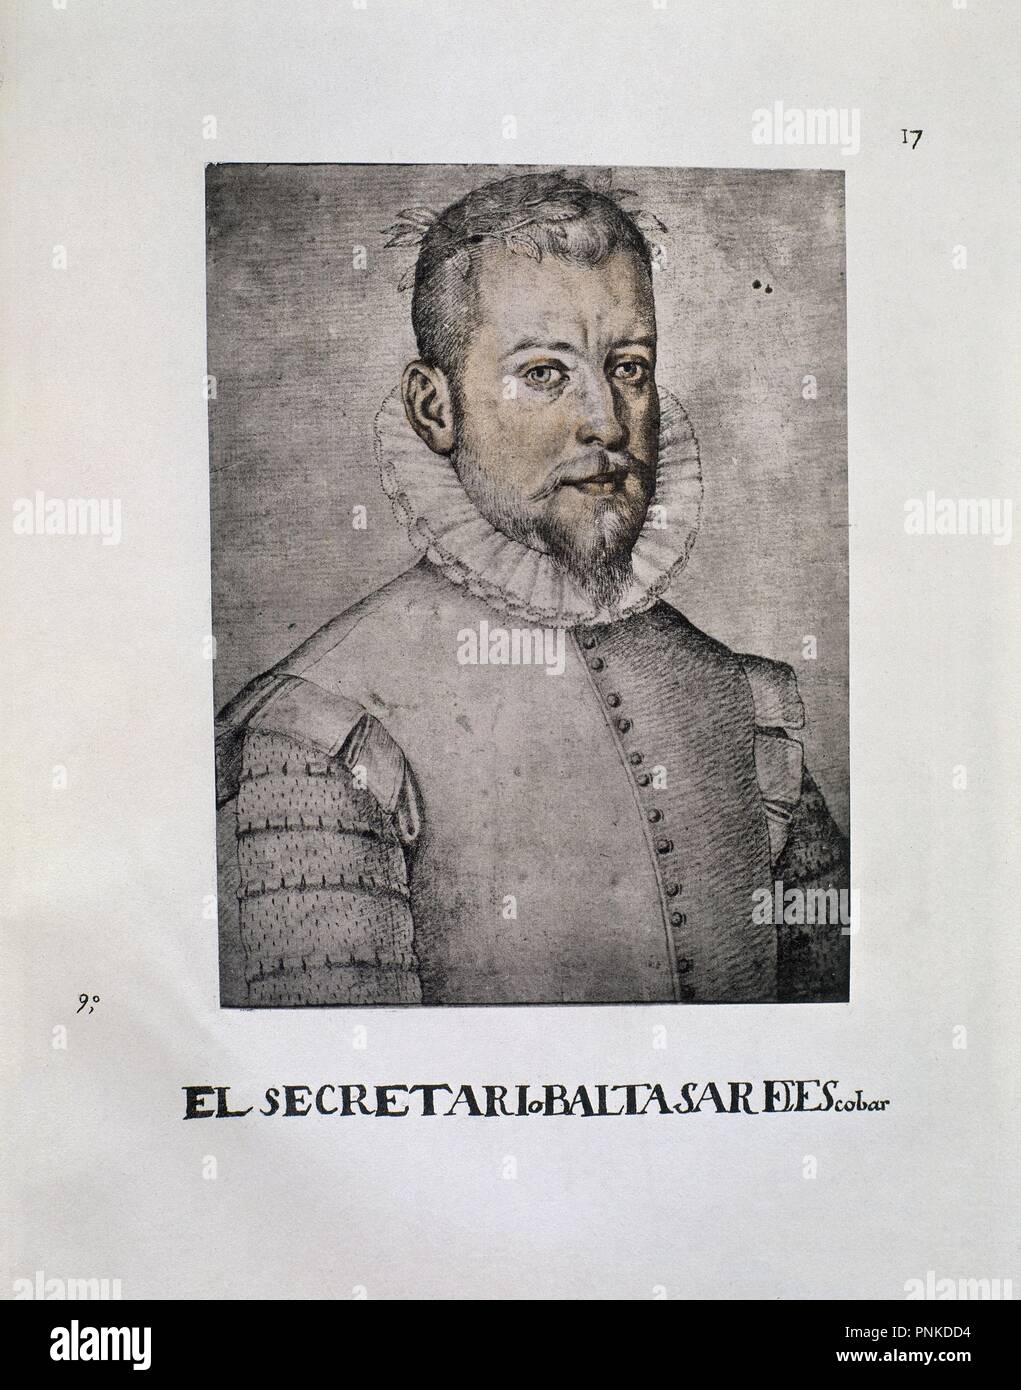 BALTASAR ESCOBAR - LIBRO DE RETRATOS DE ILUSTRES Y MEMORABLES VARONES - 1599. Author: PACHECO, FRANCISCO. Location: BIBLIOTECA NACIONAL-COLECCION. MADRID. SPAIN. Stock Photo